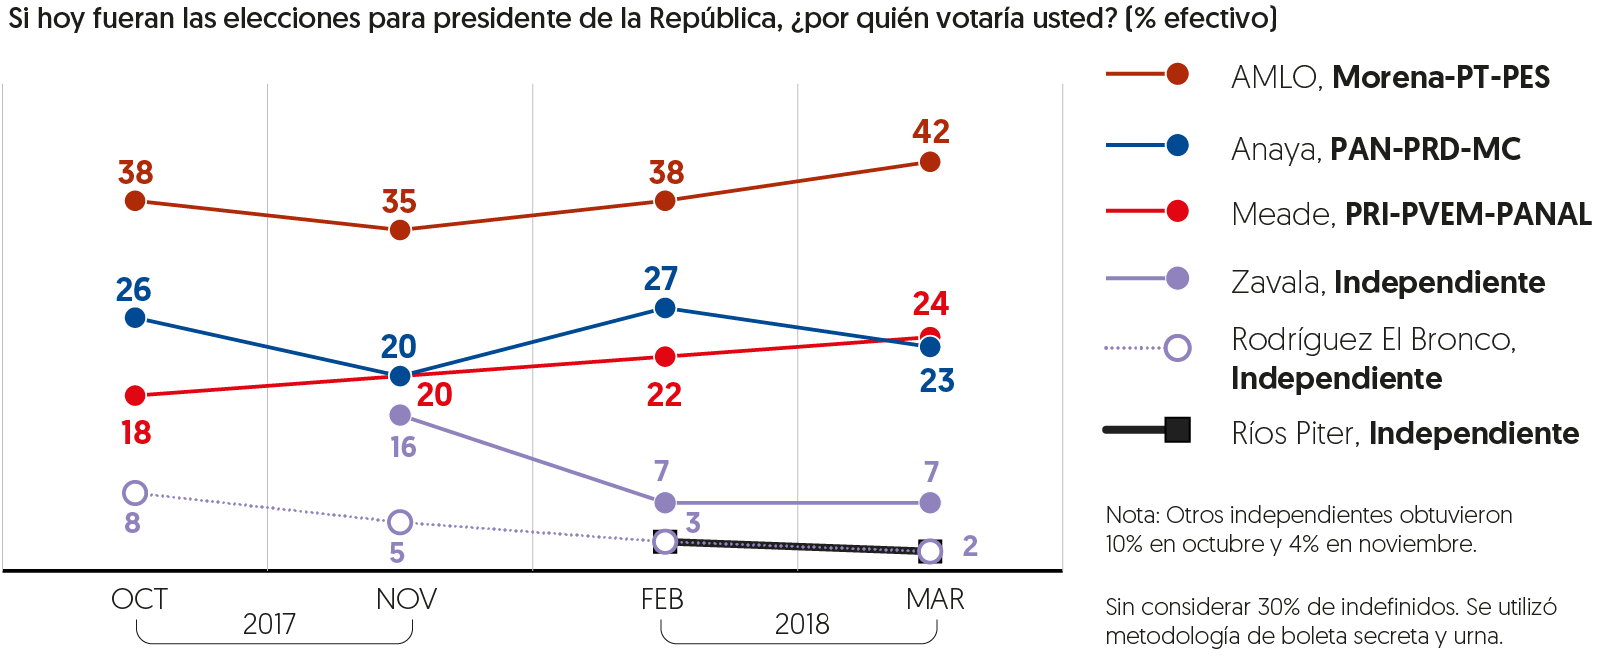 Encuesta de preferencias electorales de El Financiero, publicada el 22 de marzo de 2018.